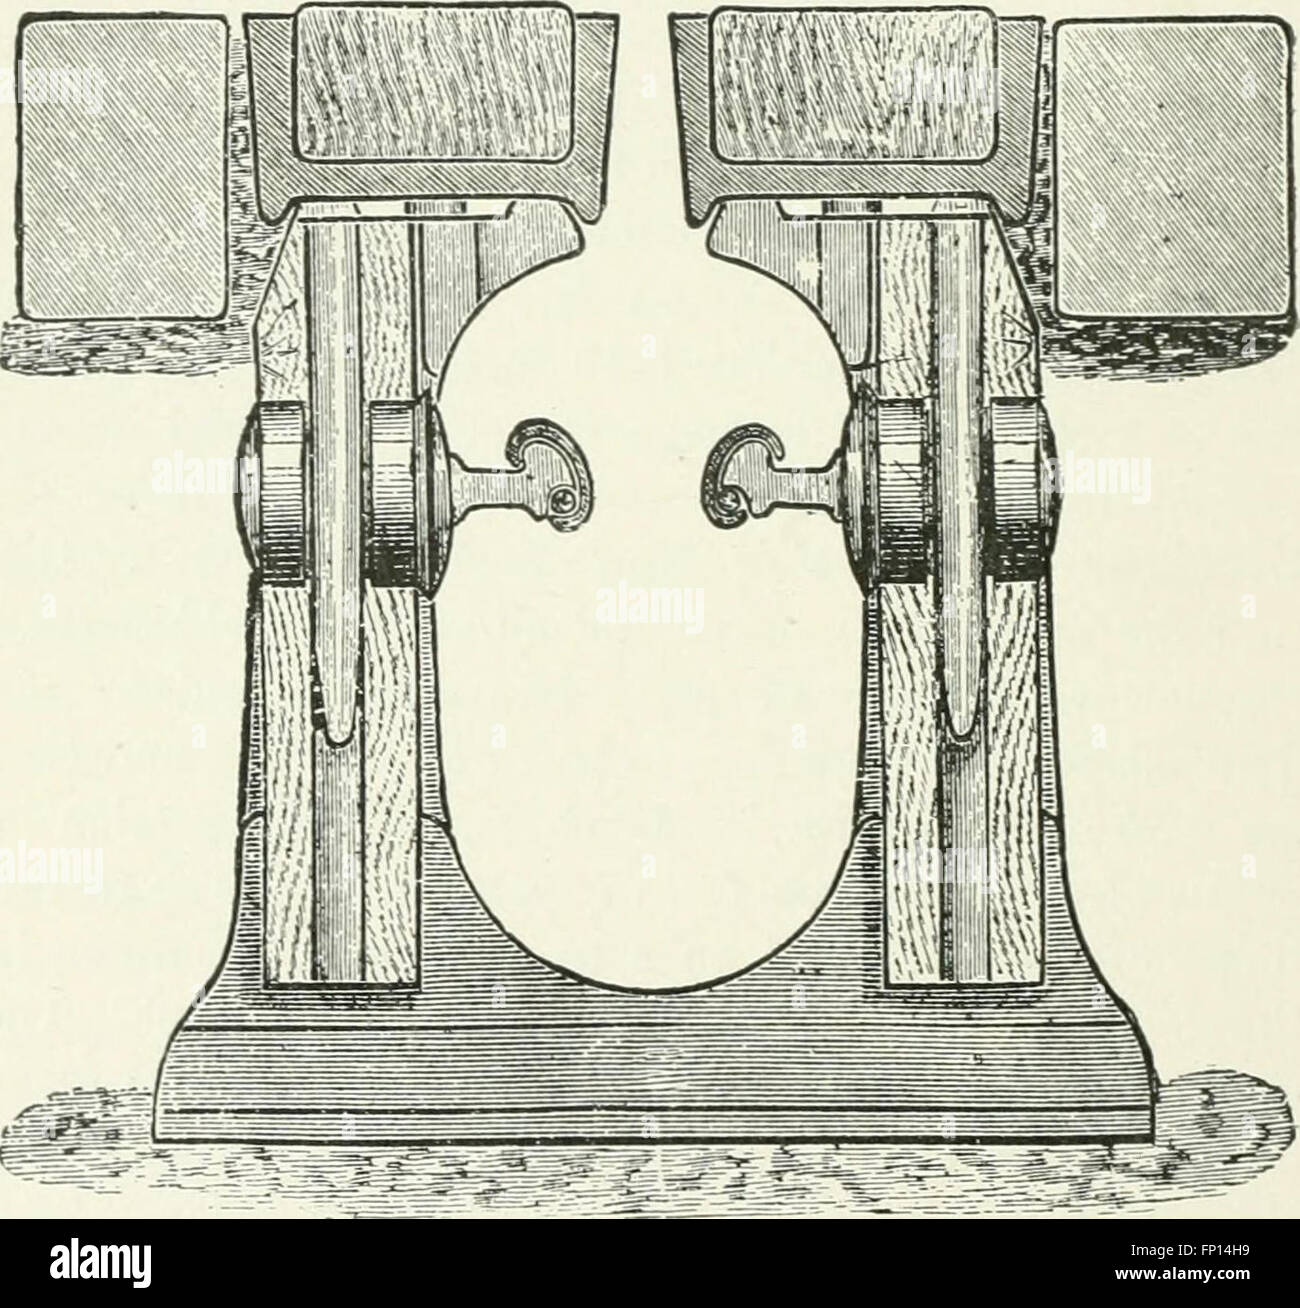 Les merveilles du mécanisme moderne. RC3A9A3A9 de cohorte des travailleurs des mines Les progrès récents en mécanique, physique et sciences de l'ingénieur (1896) Banque D'Images